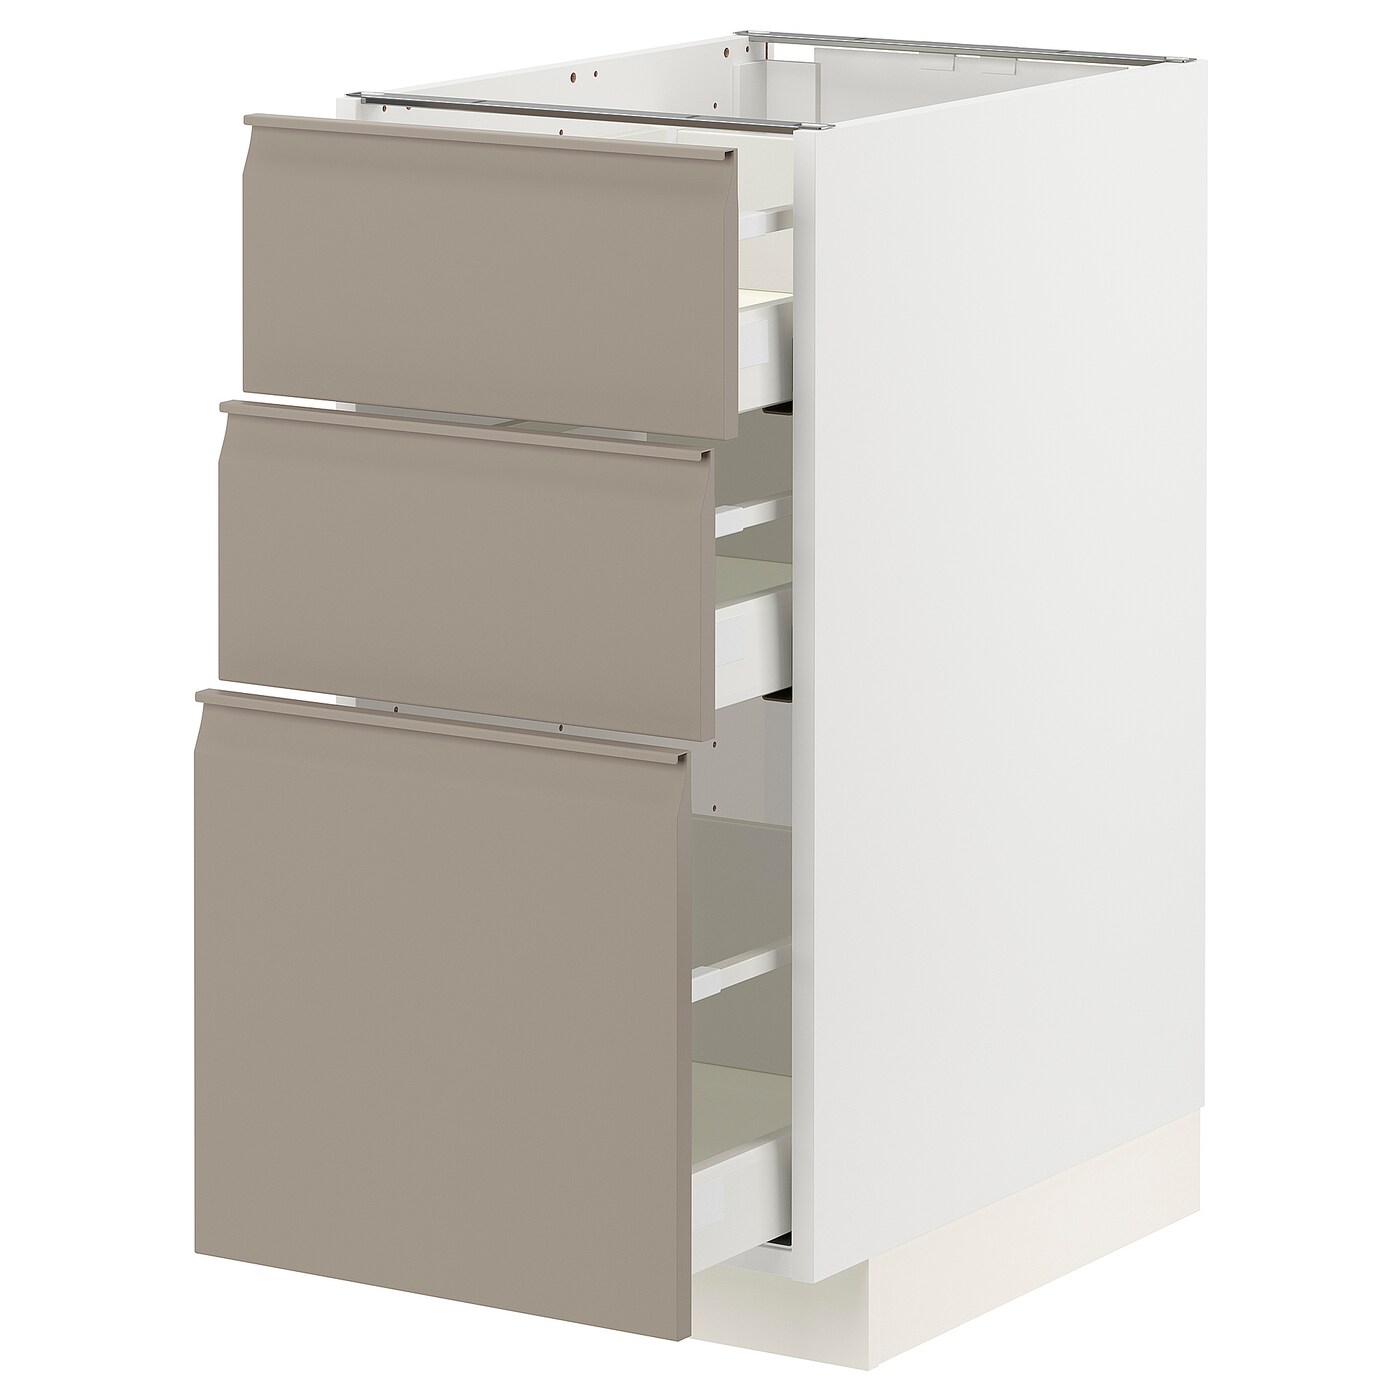 Напольный кухонный шкаф  - IKEA METOD MAXIMERA, 88x62x40см, белый/темно-бежевый, МЕТОД МАКСИМЕРА ИКЕА